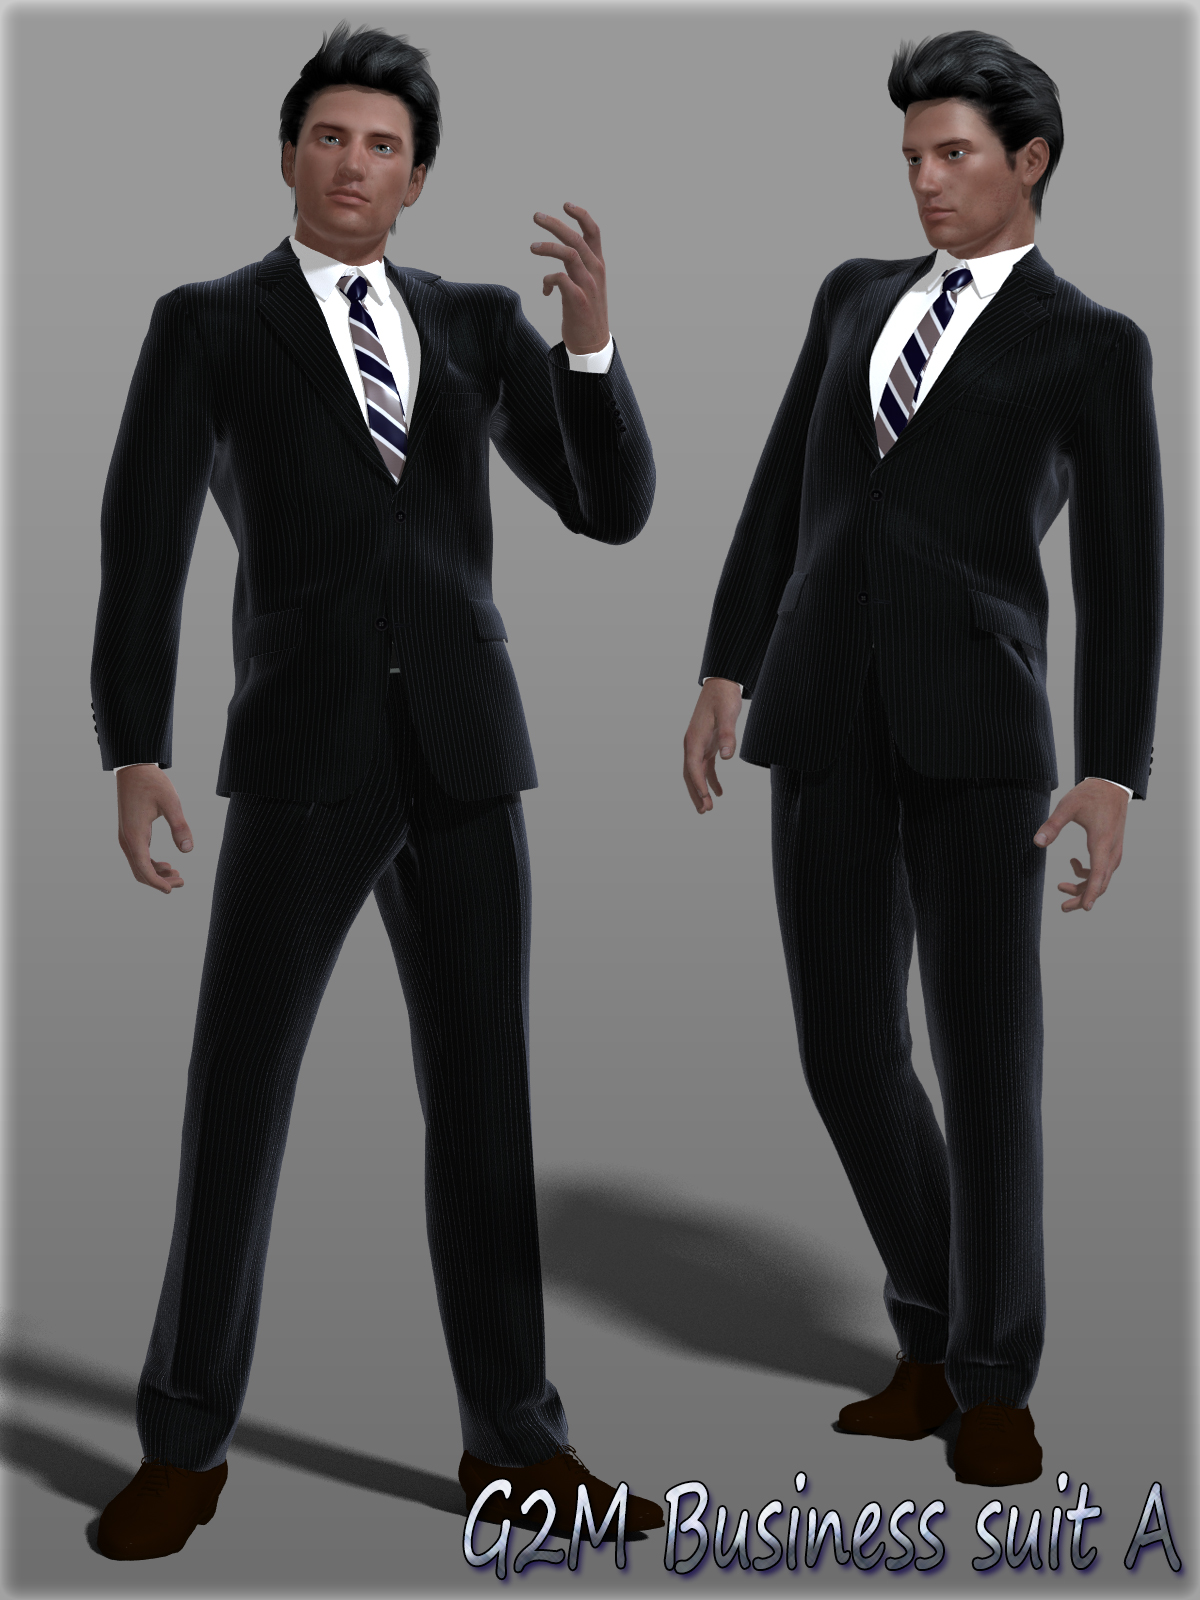 G2M Business suit A